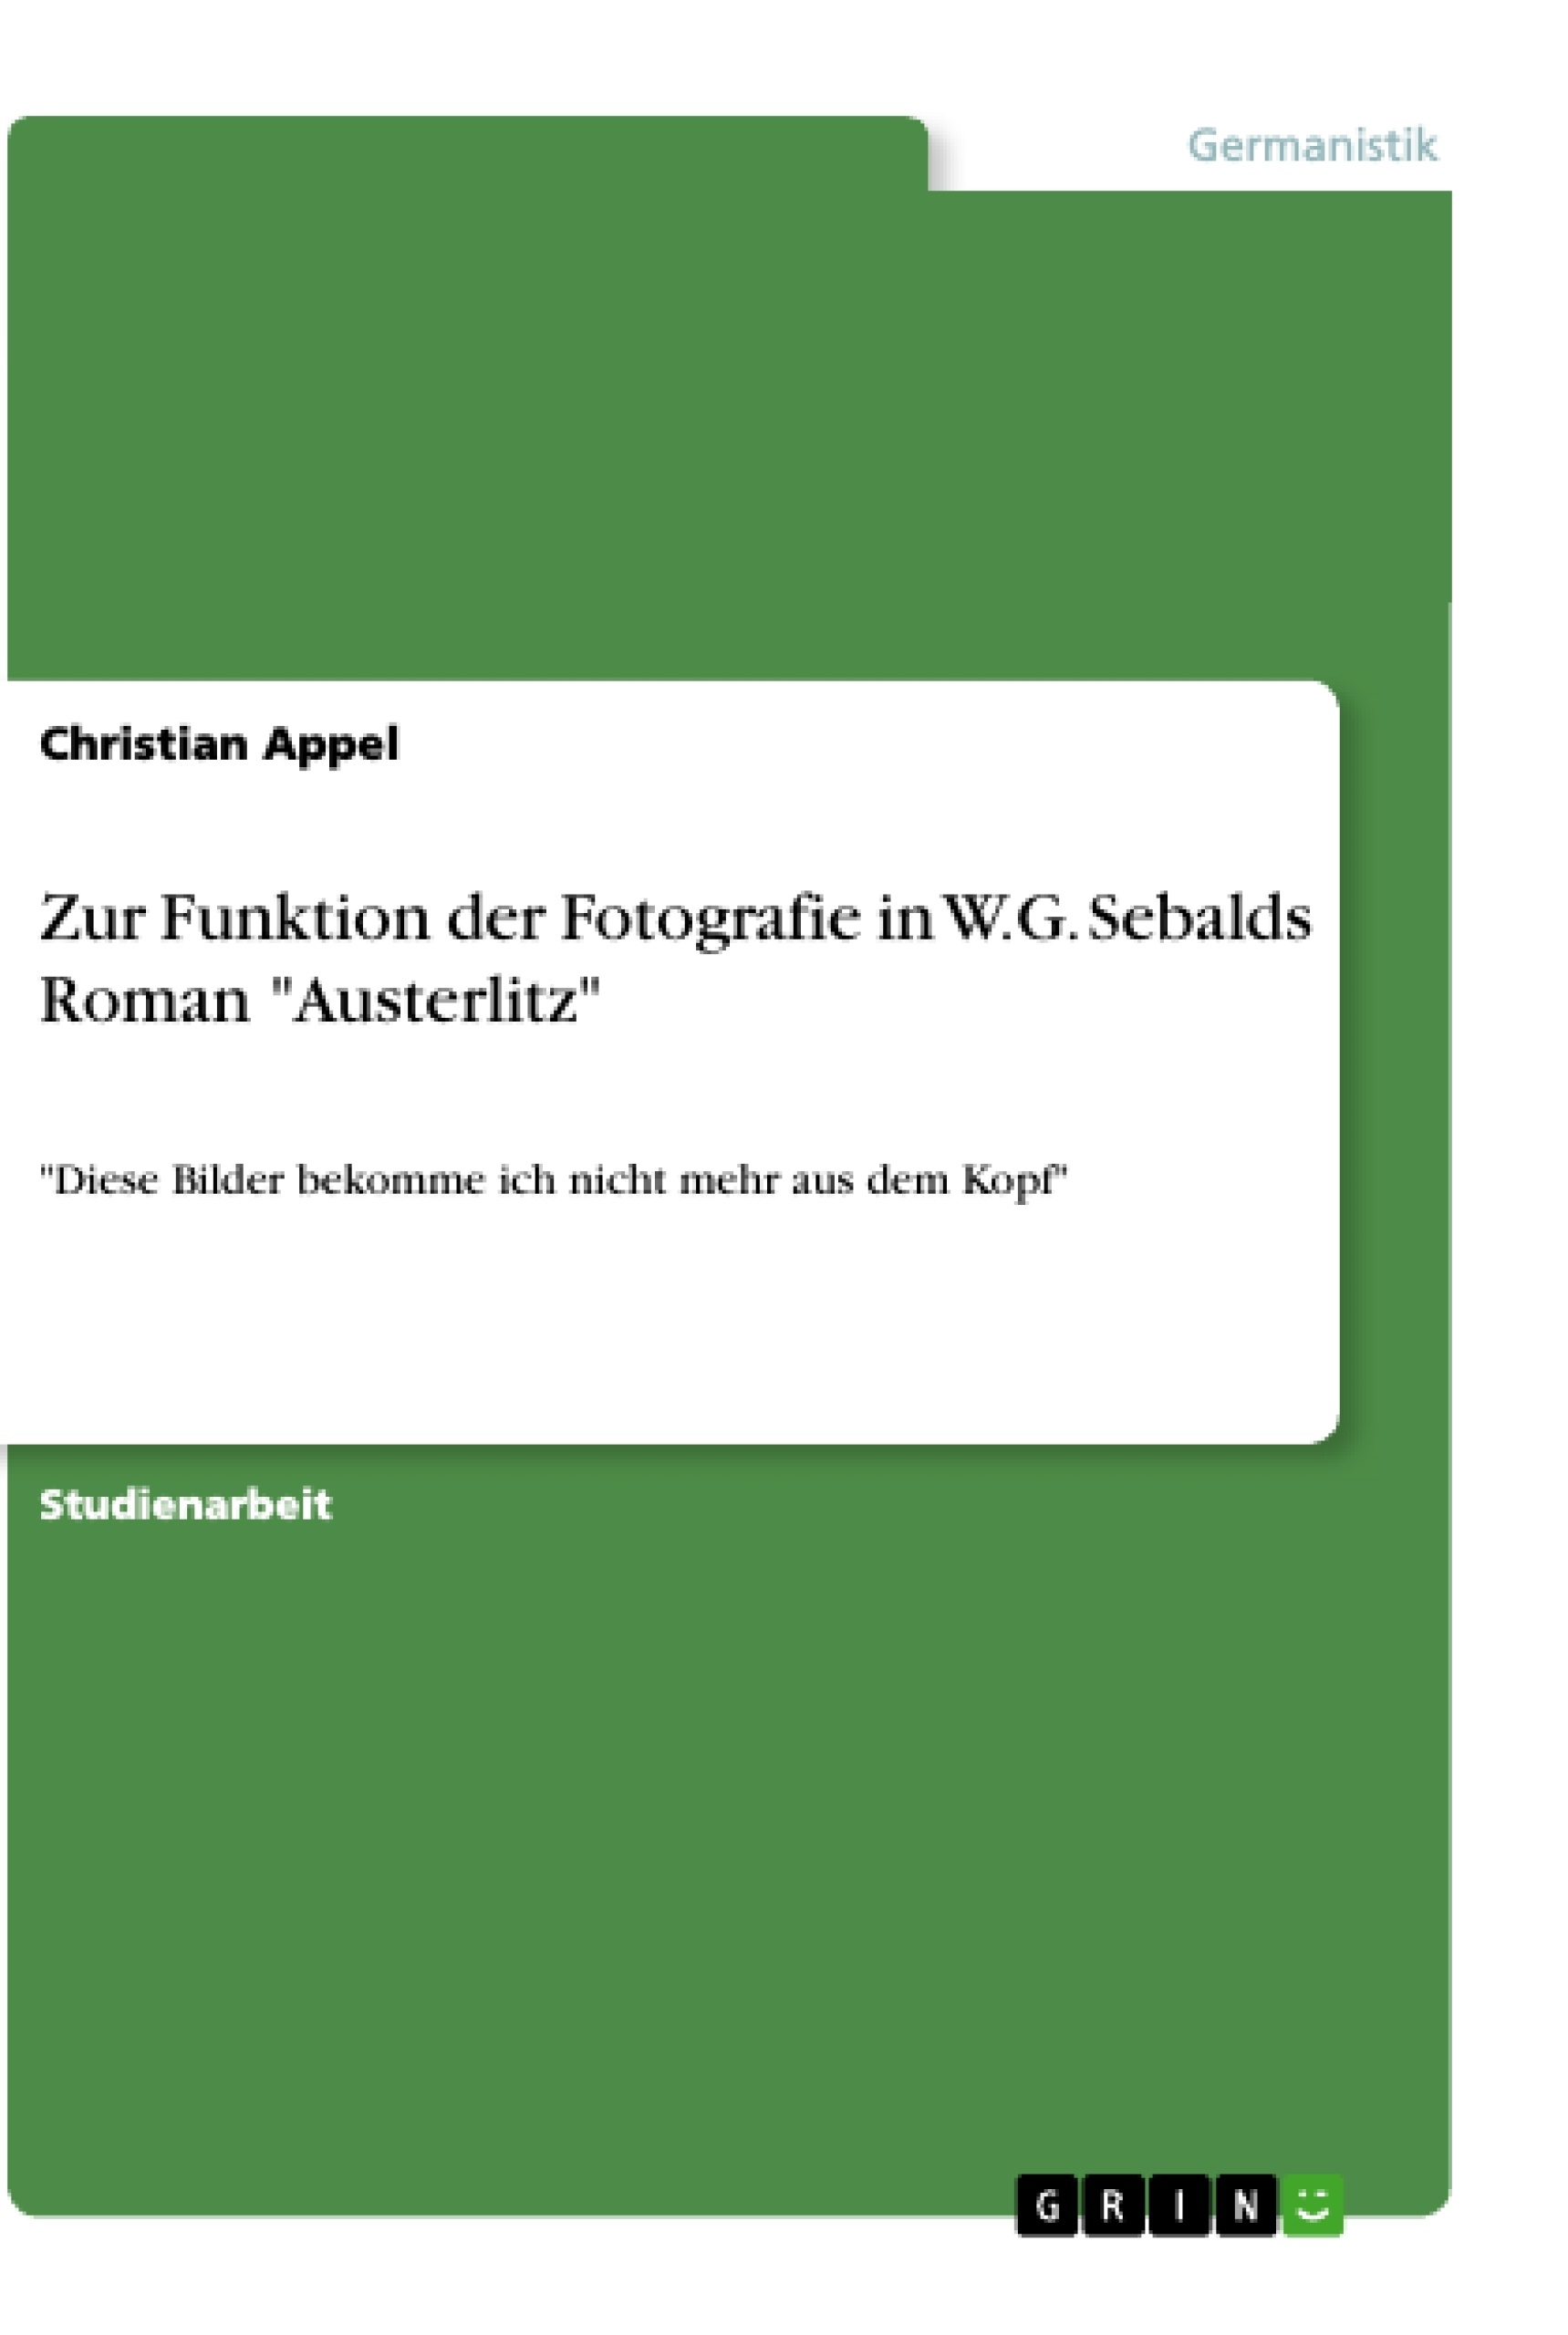 Title: Zur Funktion der Fotografie in W.G. Sebalds Roman "Austerlitz"